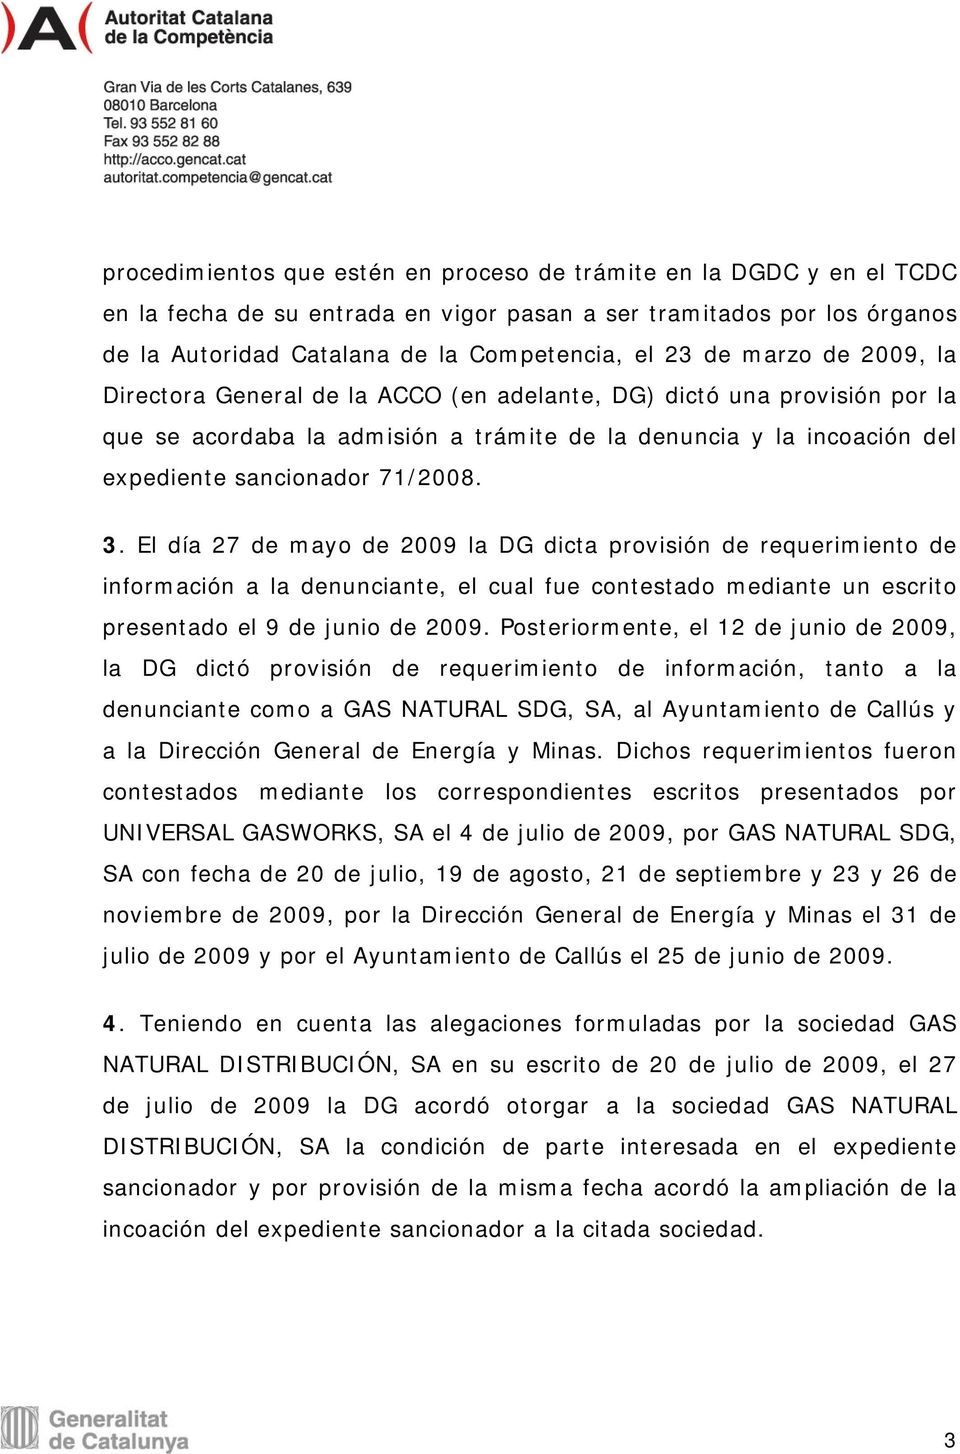 El día 27 de mayo de 2009 la DG dicta provisión de requerimiento de información a la denunciante, el cual fue contestado mediante un escrito presentado el 9 de junio de 2009.